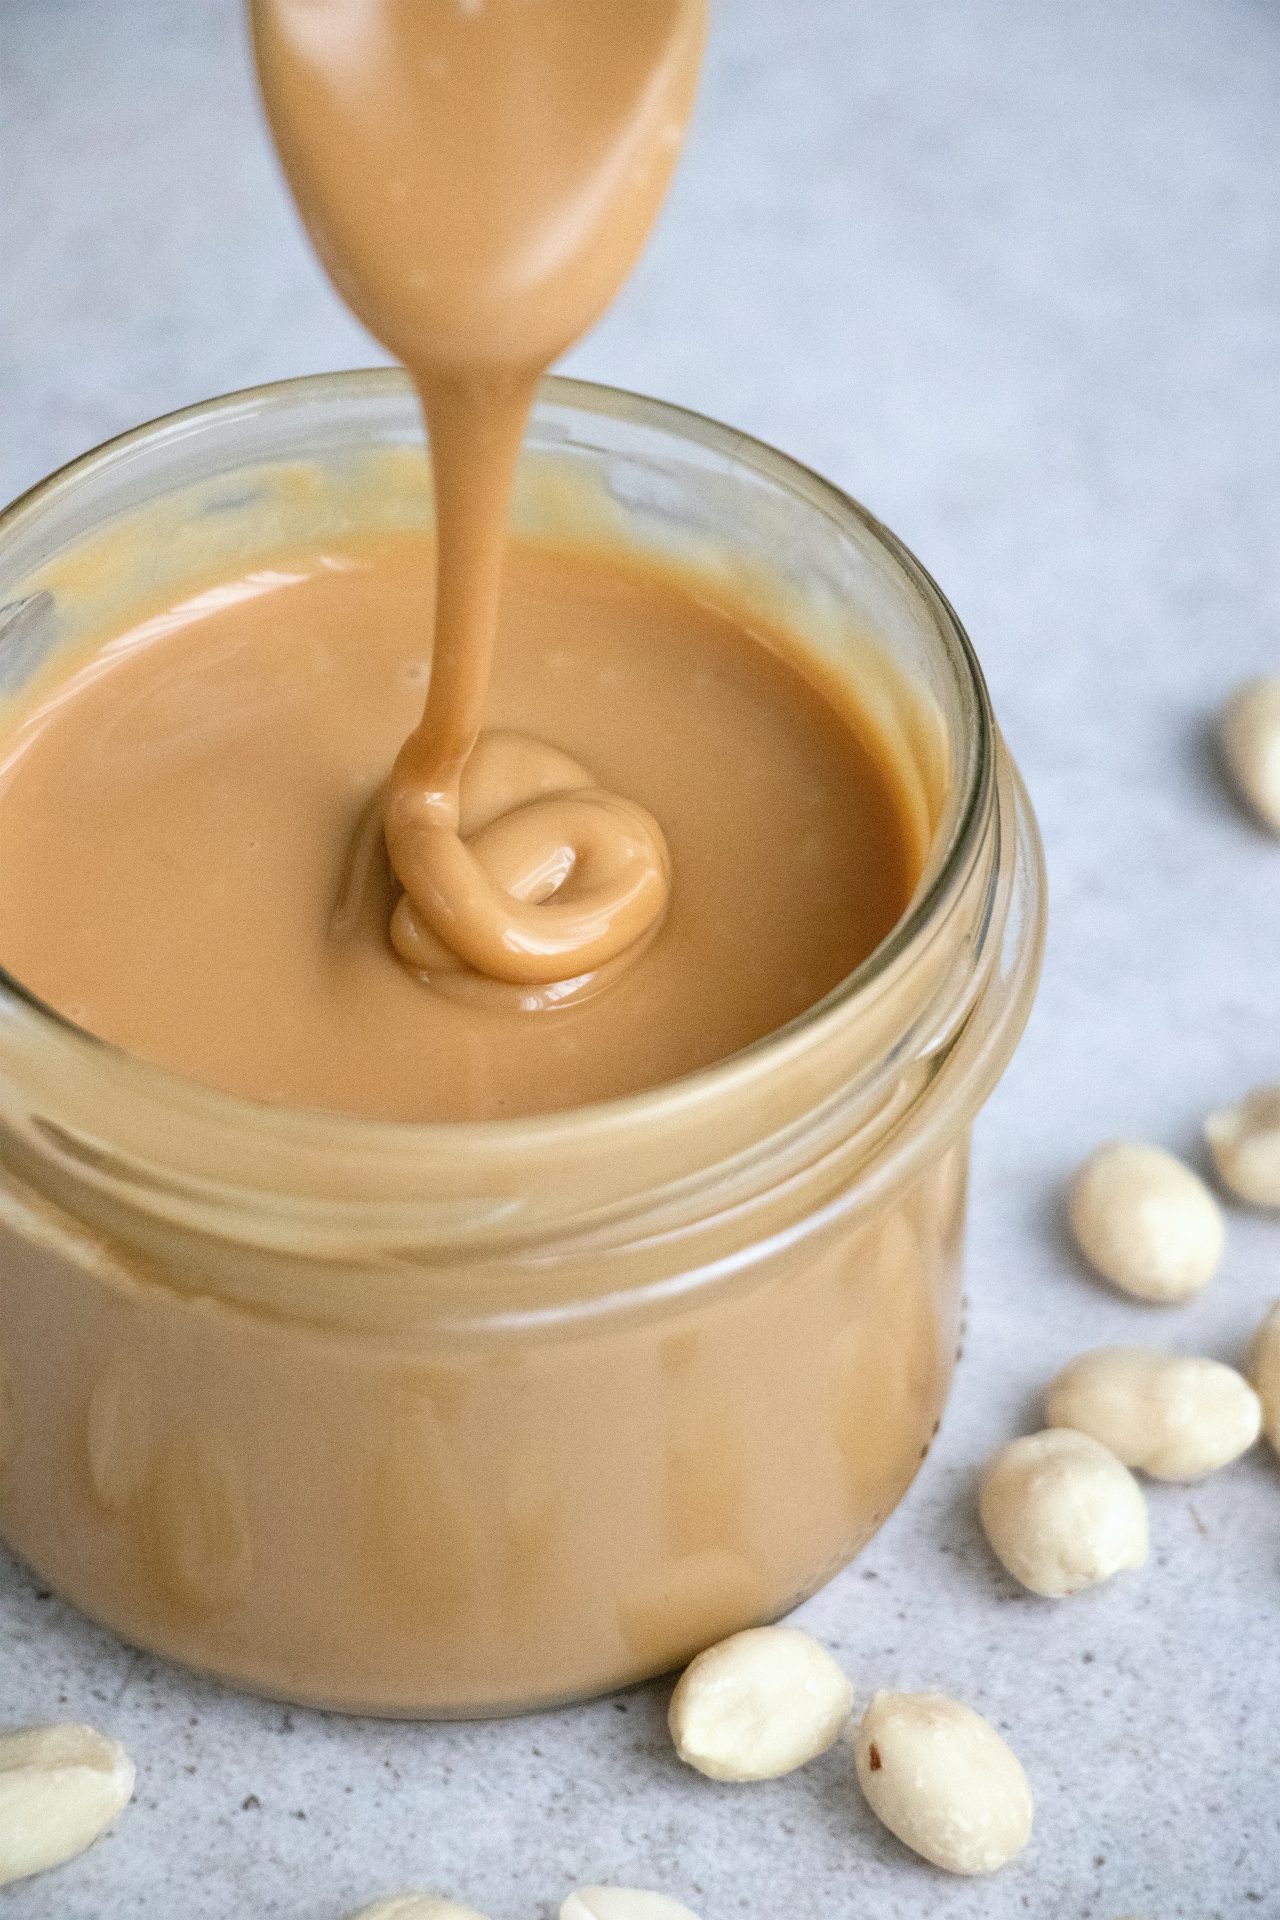 Peanut butter in jar